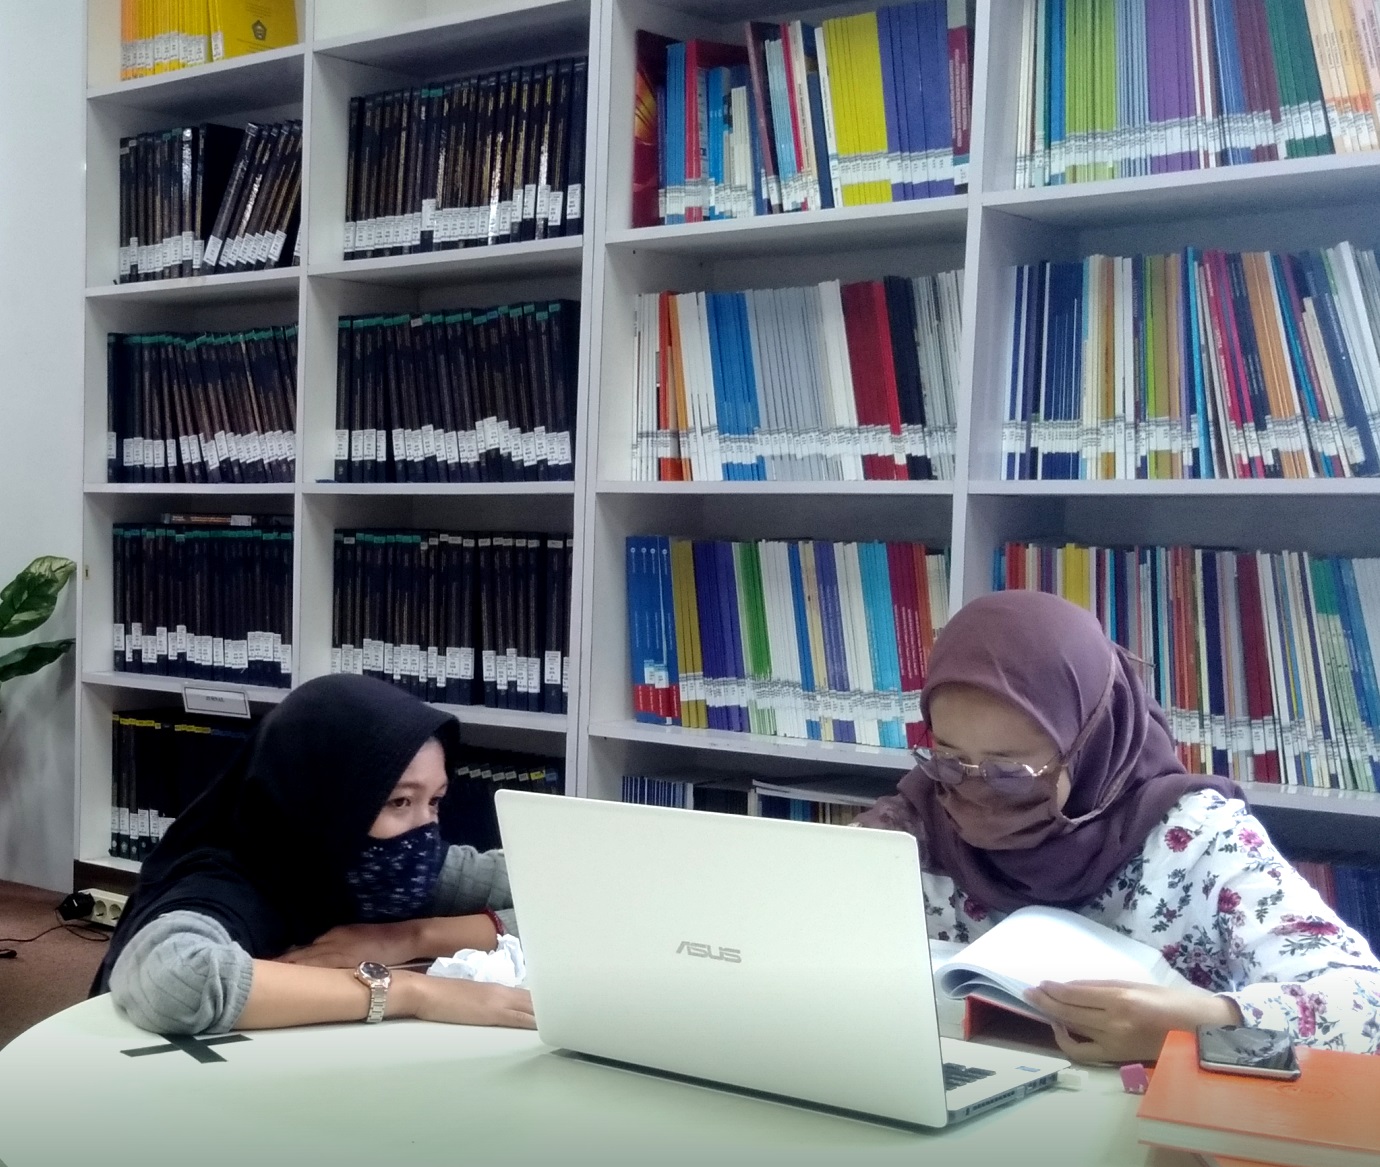 Repositori Universitas Islam 45 Bekasi